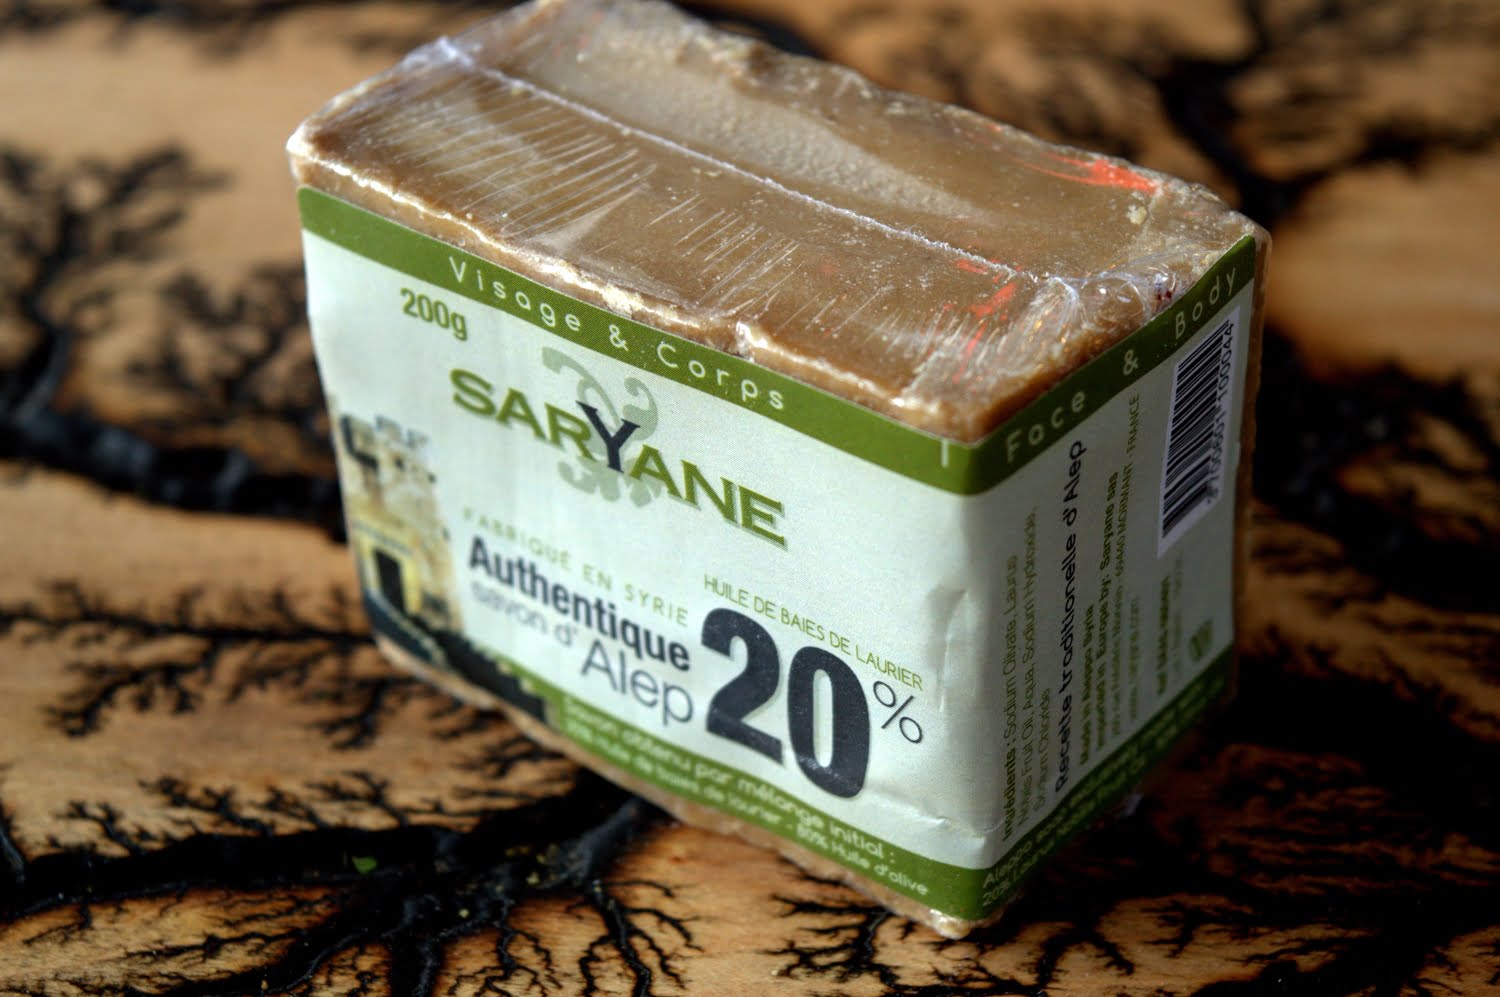 Tradycyjne mydło Aleppo 200g - 20% oleju laurowego, 80% oliwy z oliwek Saryane - Sklep online Szczypta Orientu